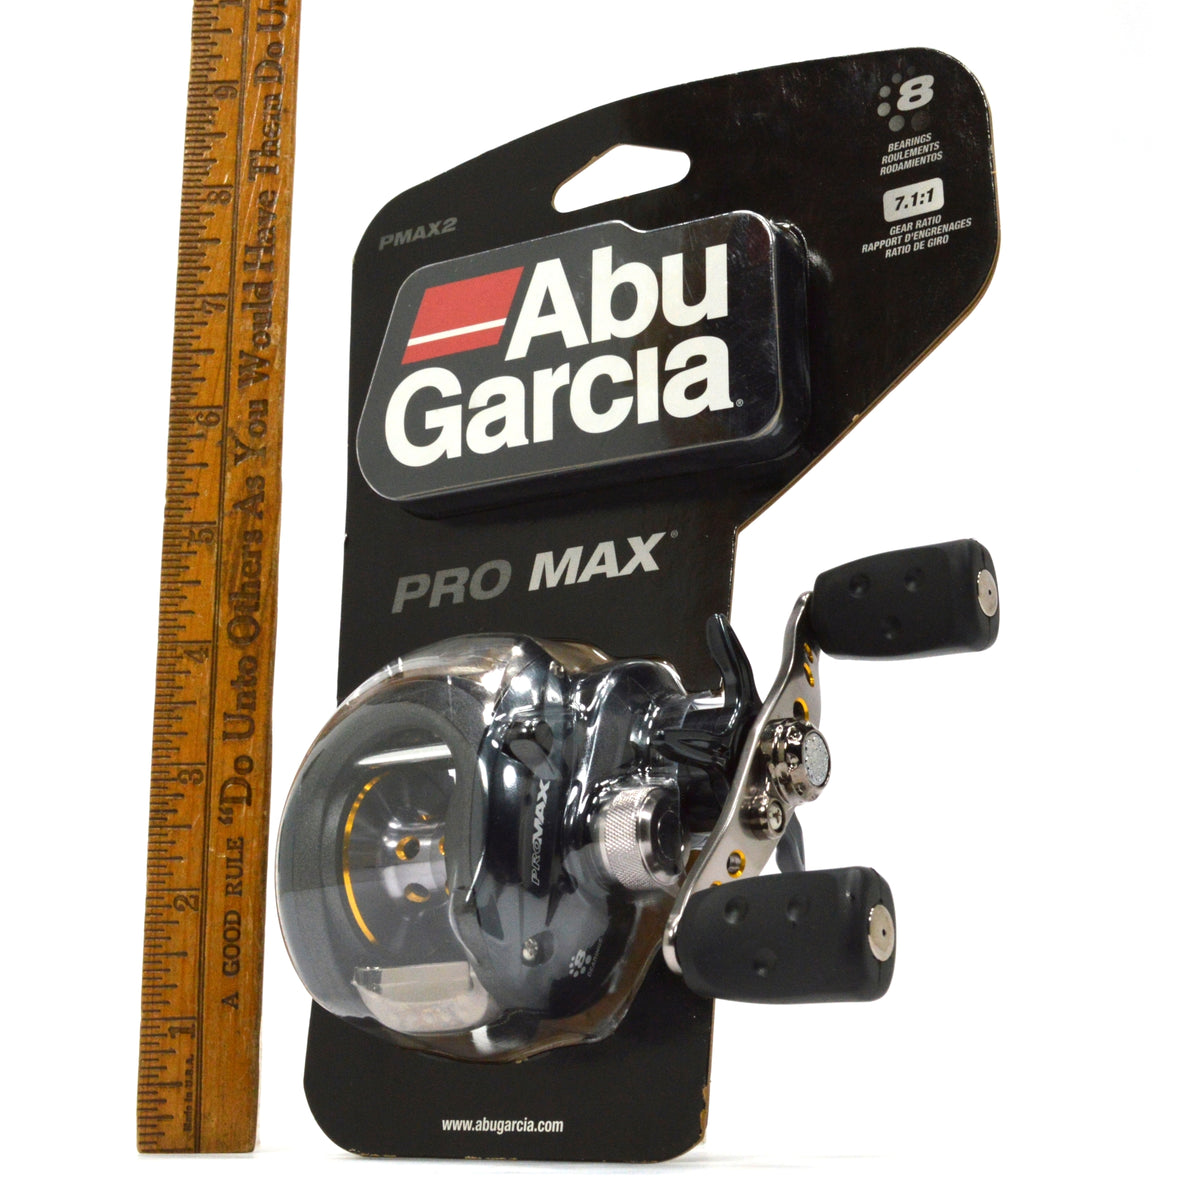 Abu Garcia Pro Max PMAXSP10 7-Bearings